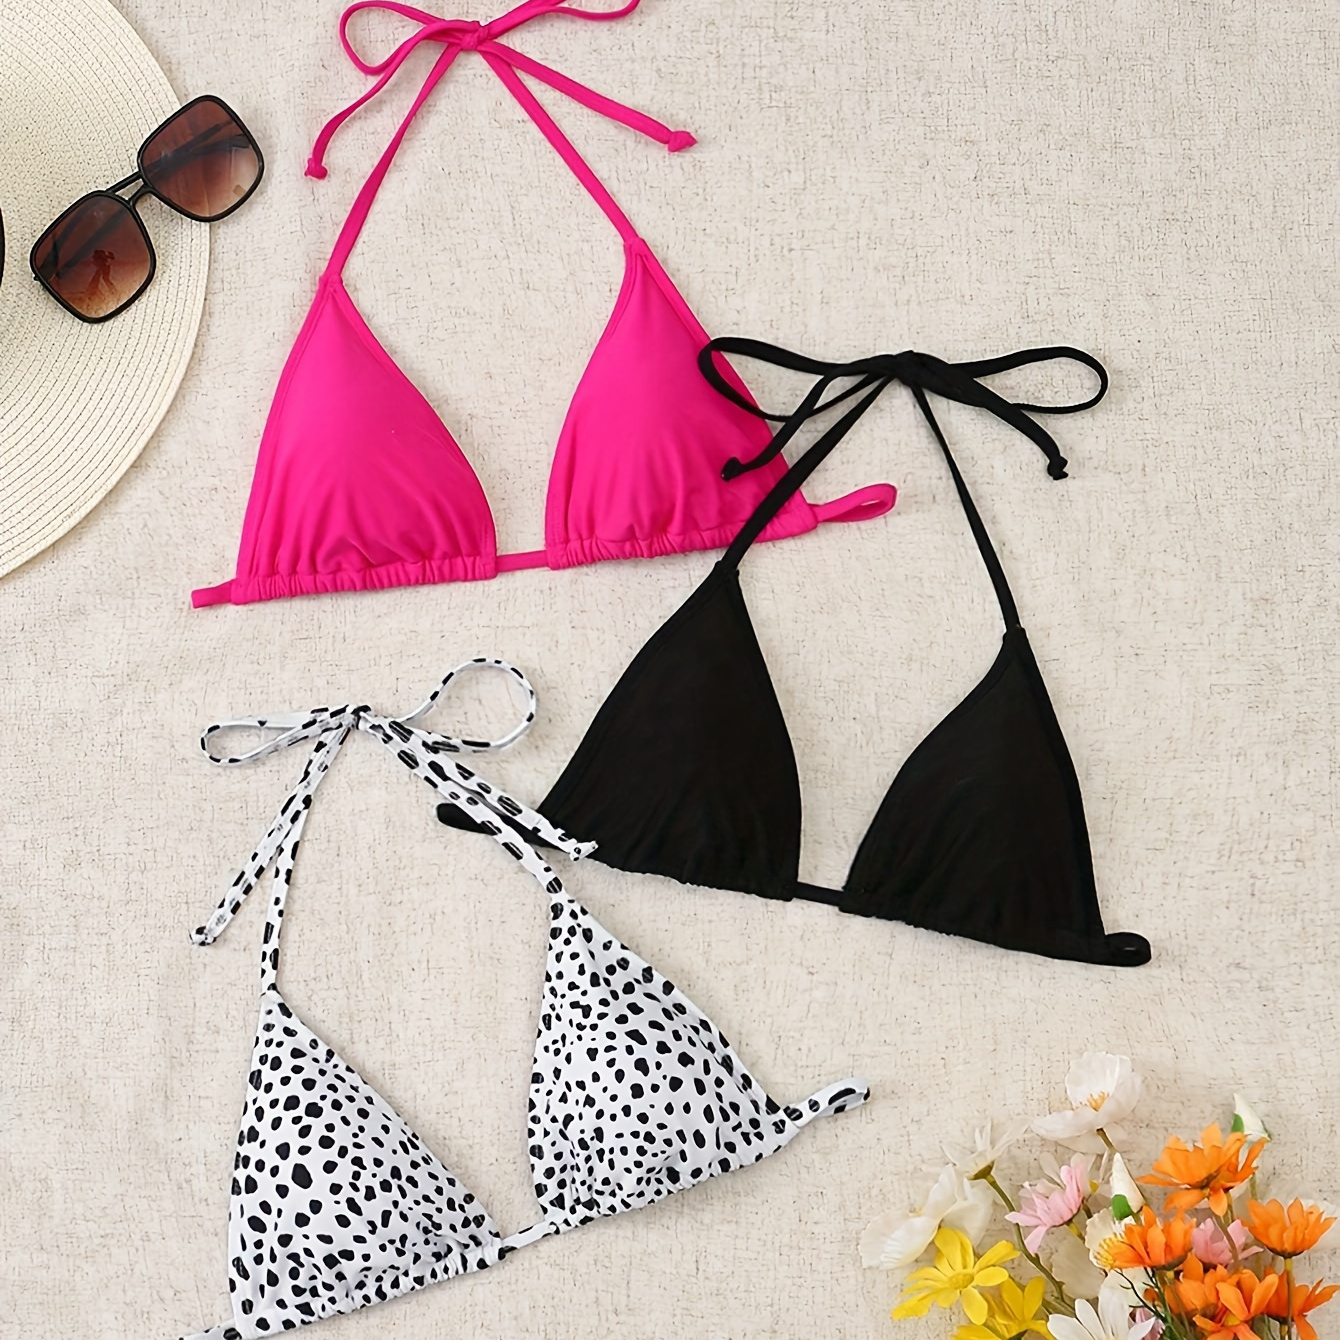 

3pcs Triangle Bikini Sets, Adjustable Tie-back Swimwear, Women's Two-piece Bathing Suits Polka Dots, Summer Beachwear